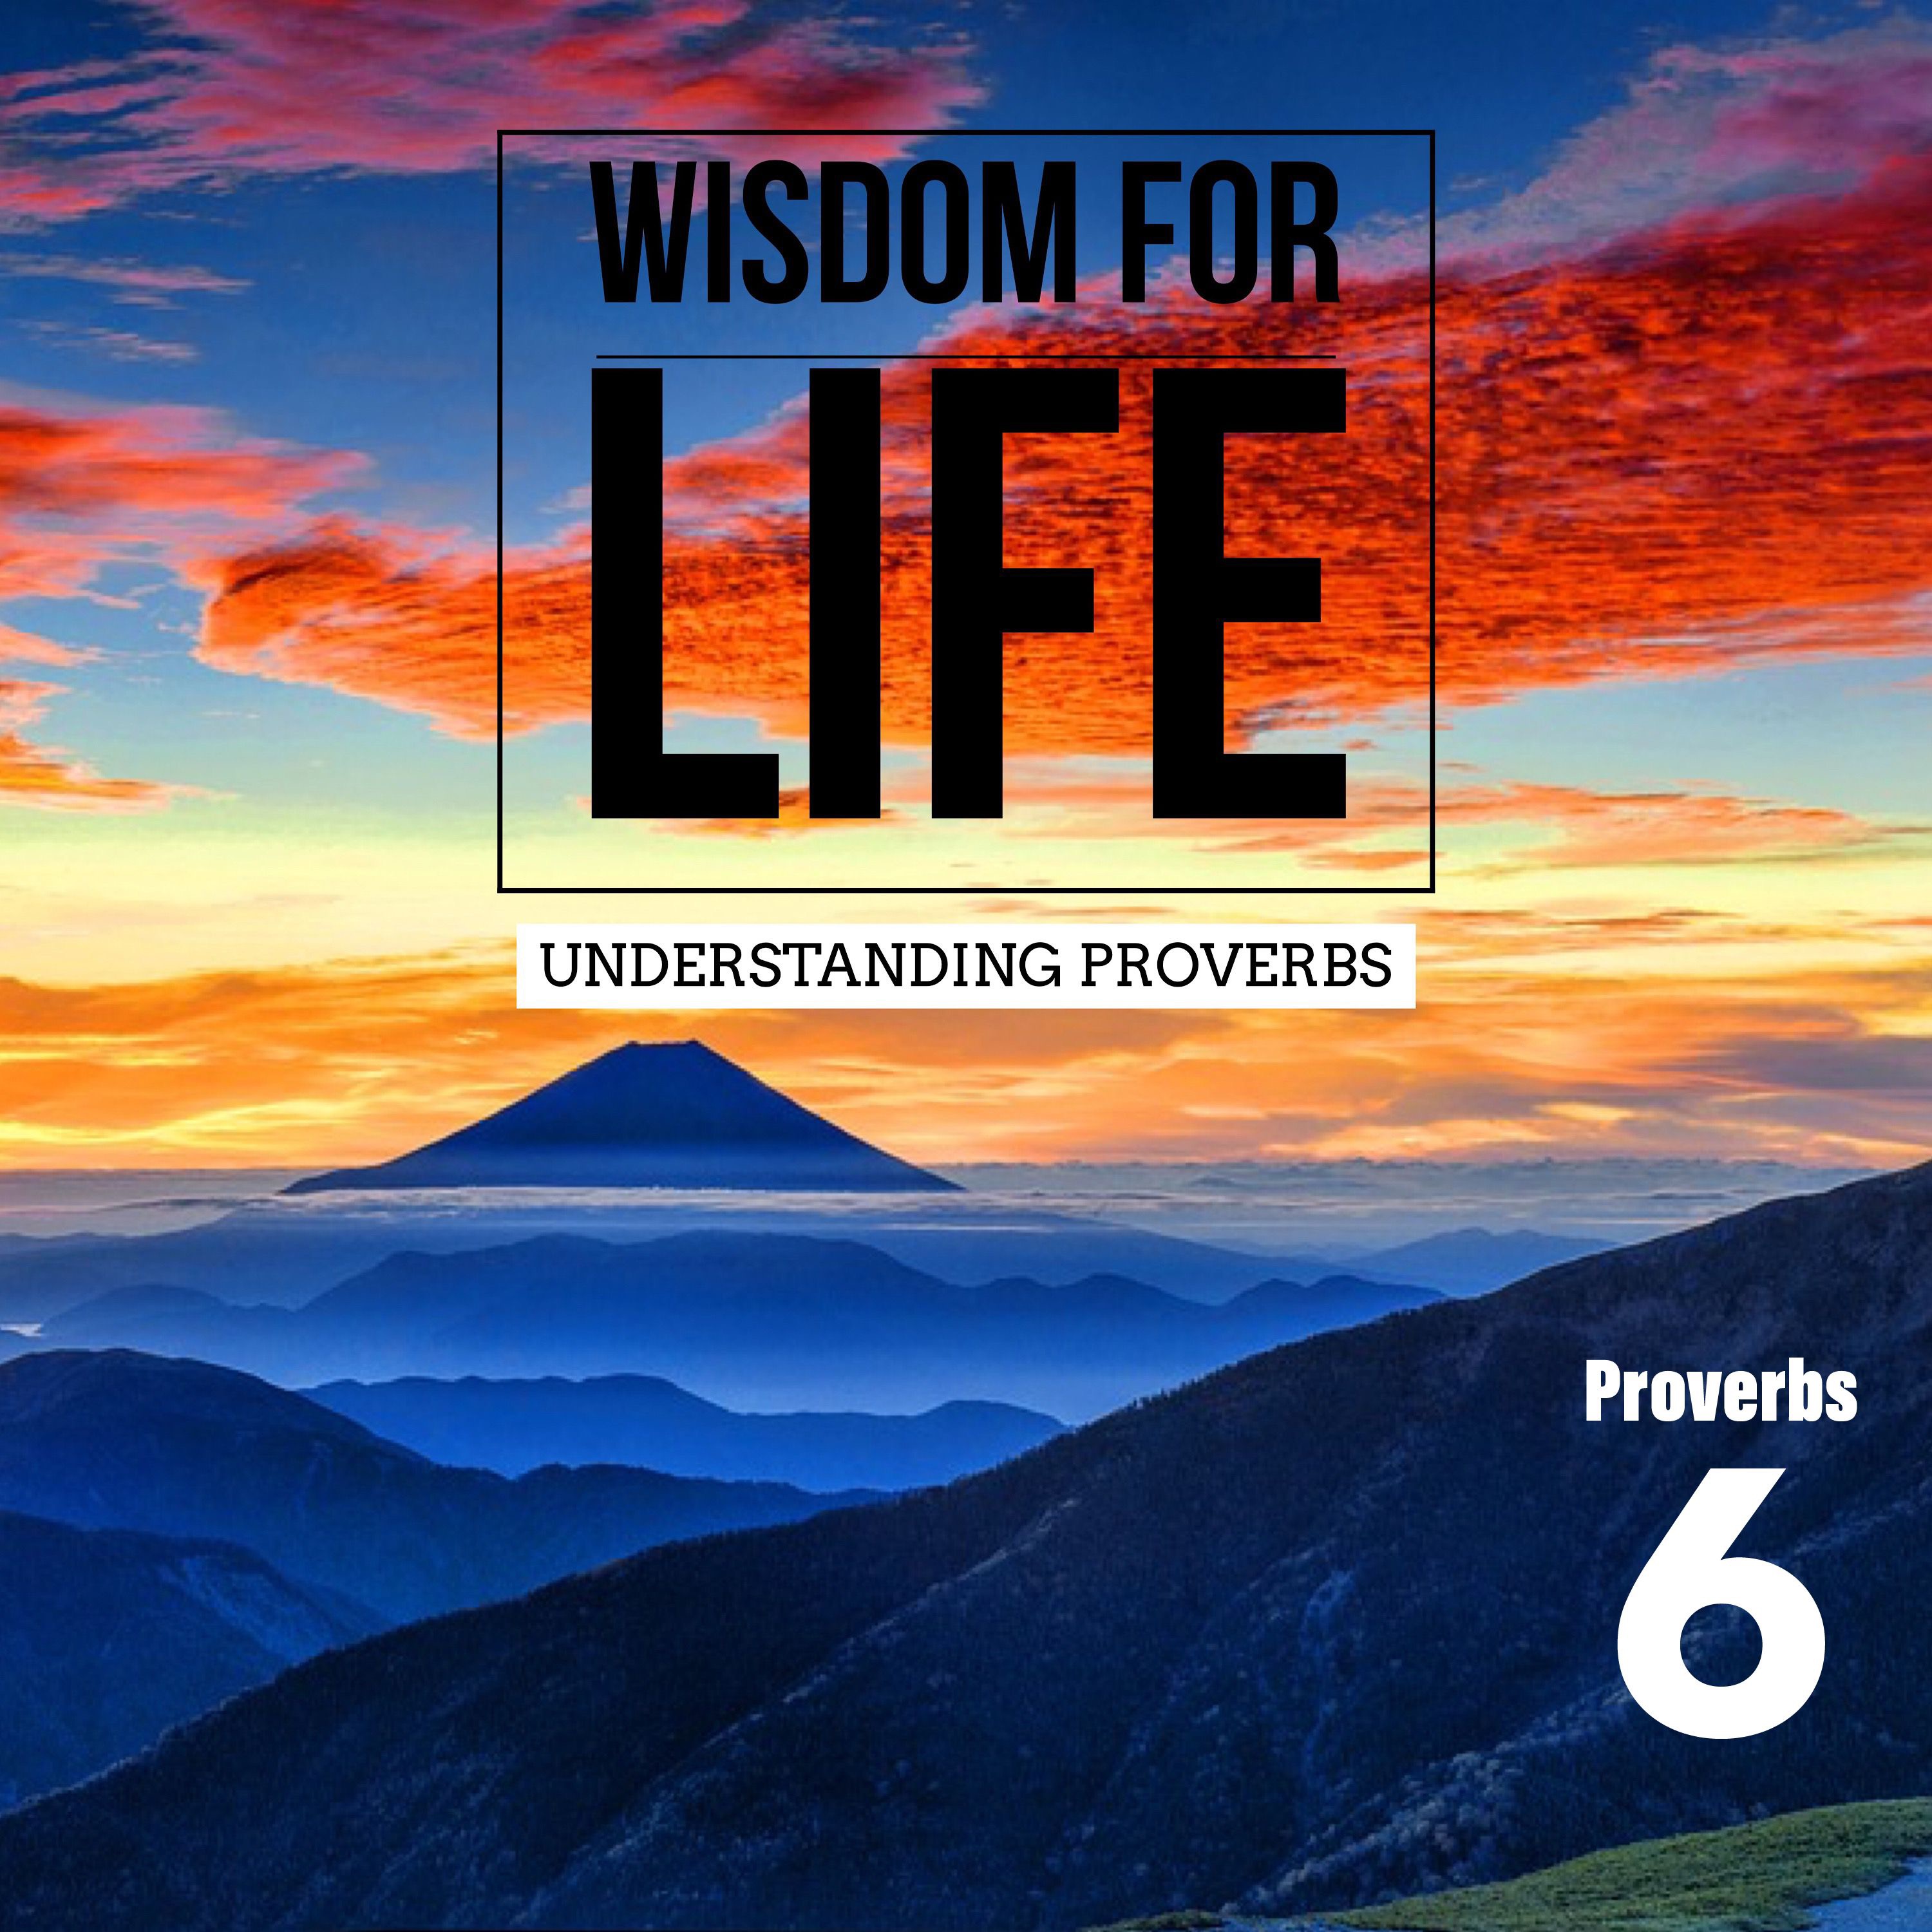 UNDERSTANDING PROVERBS 6